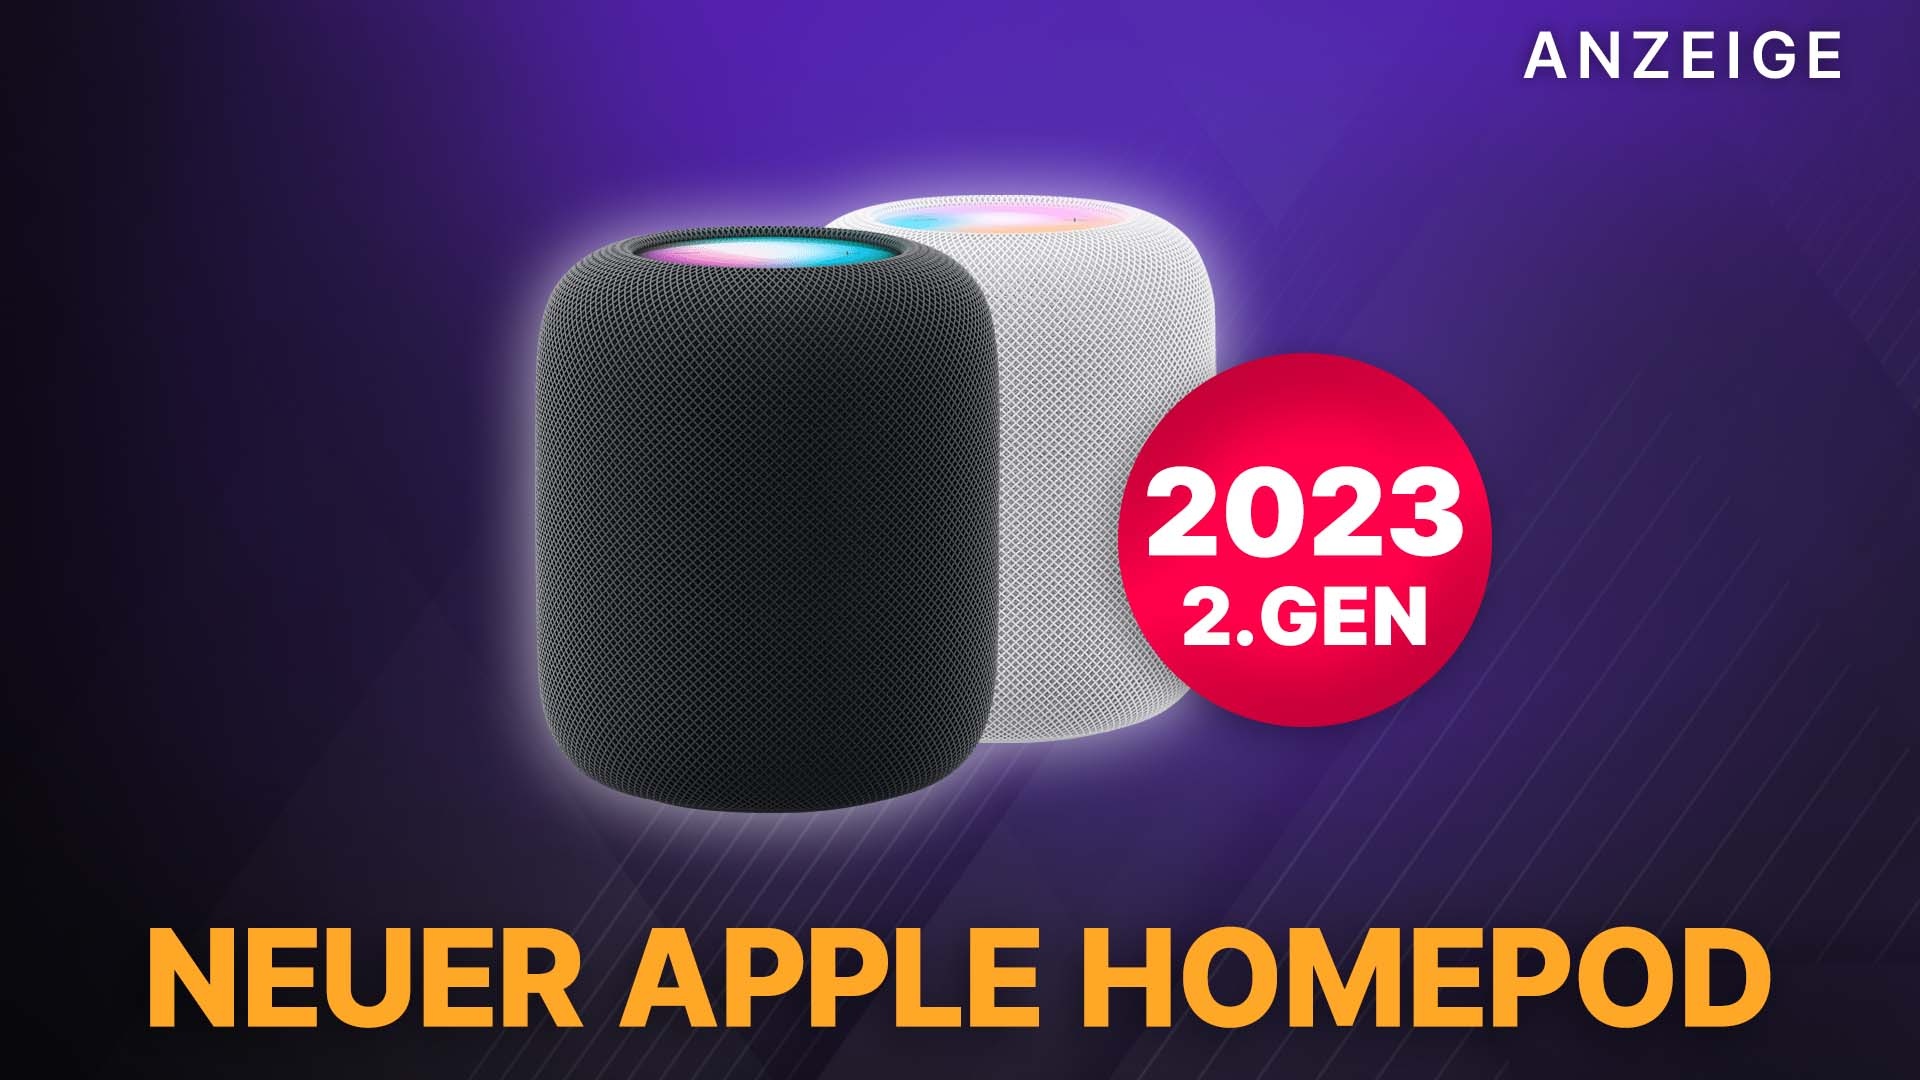 Den neuen Apple Homepod kaufen: Das macht die 2. Generation des Smart Home Speakers einzigartig